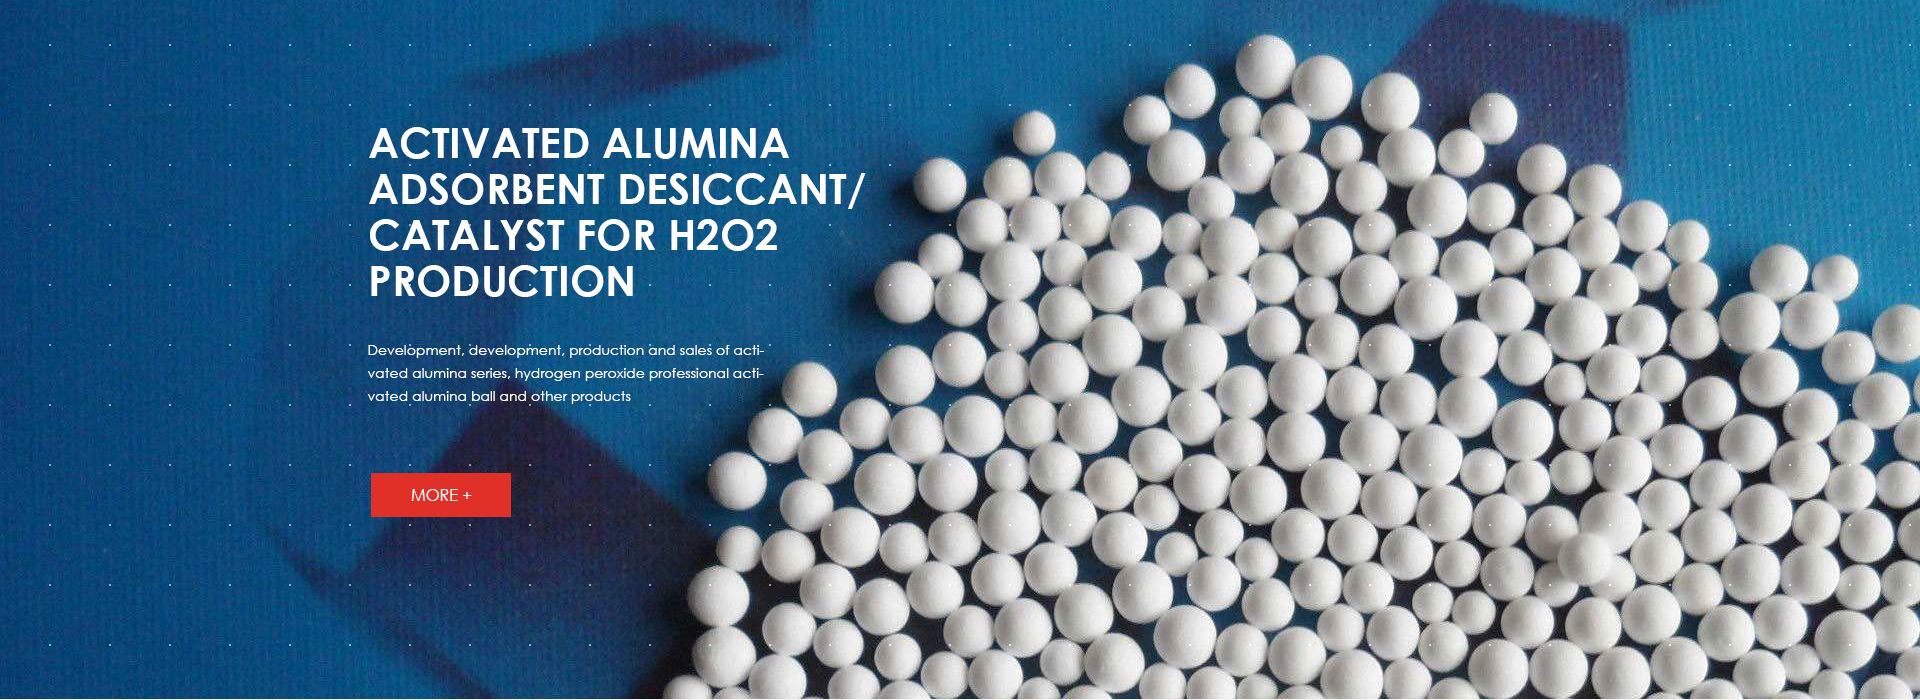 tabular alumina